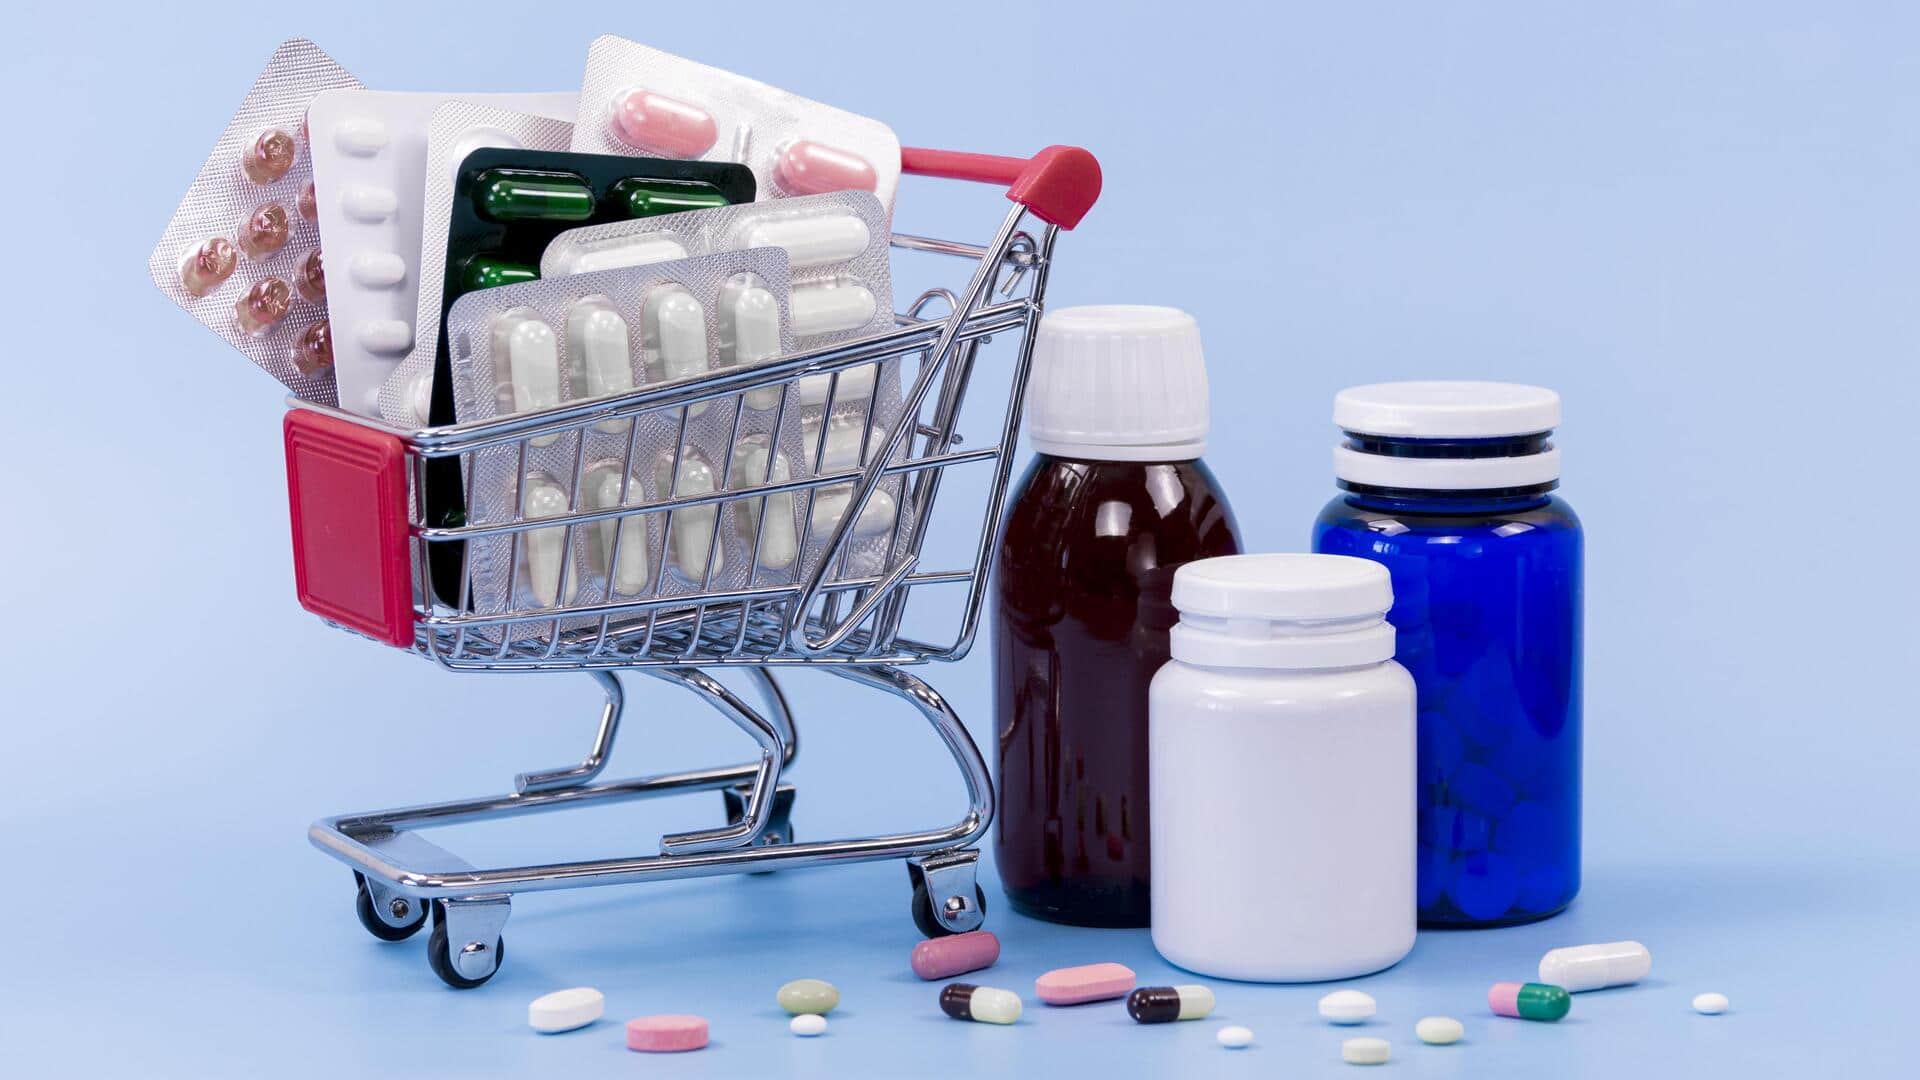 दवाओं की ऑनलाइन बिक्री पर नीति लाने के लिए सरकार ने कोर्ट से मांगा समय